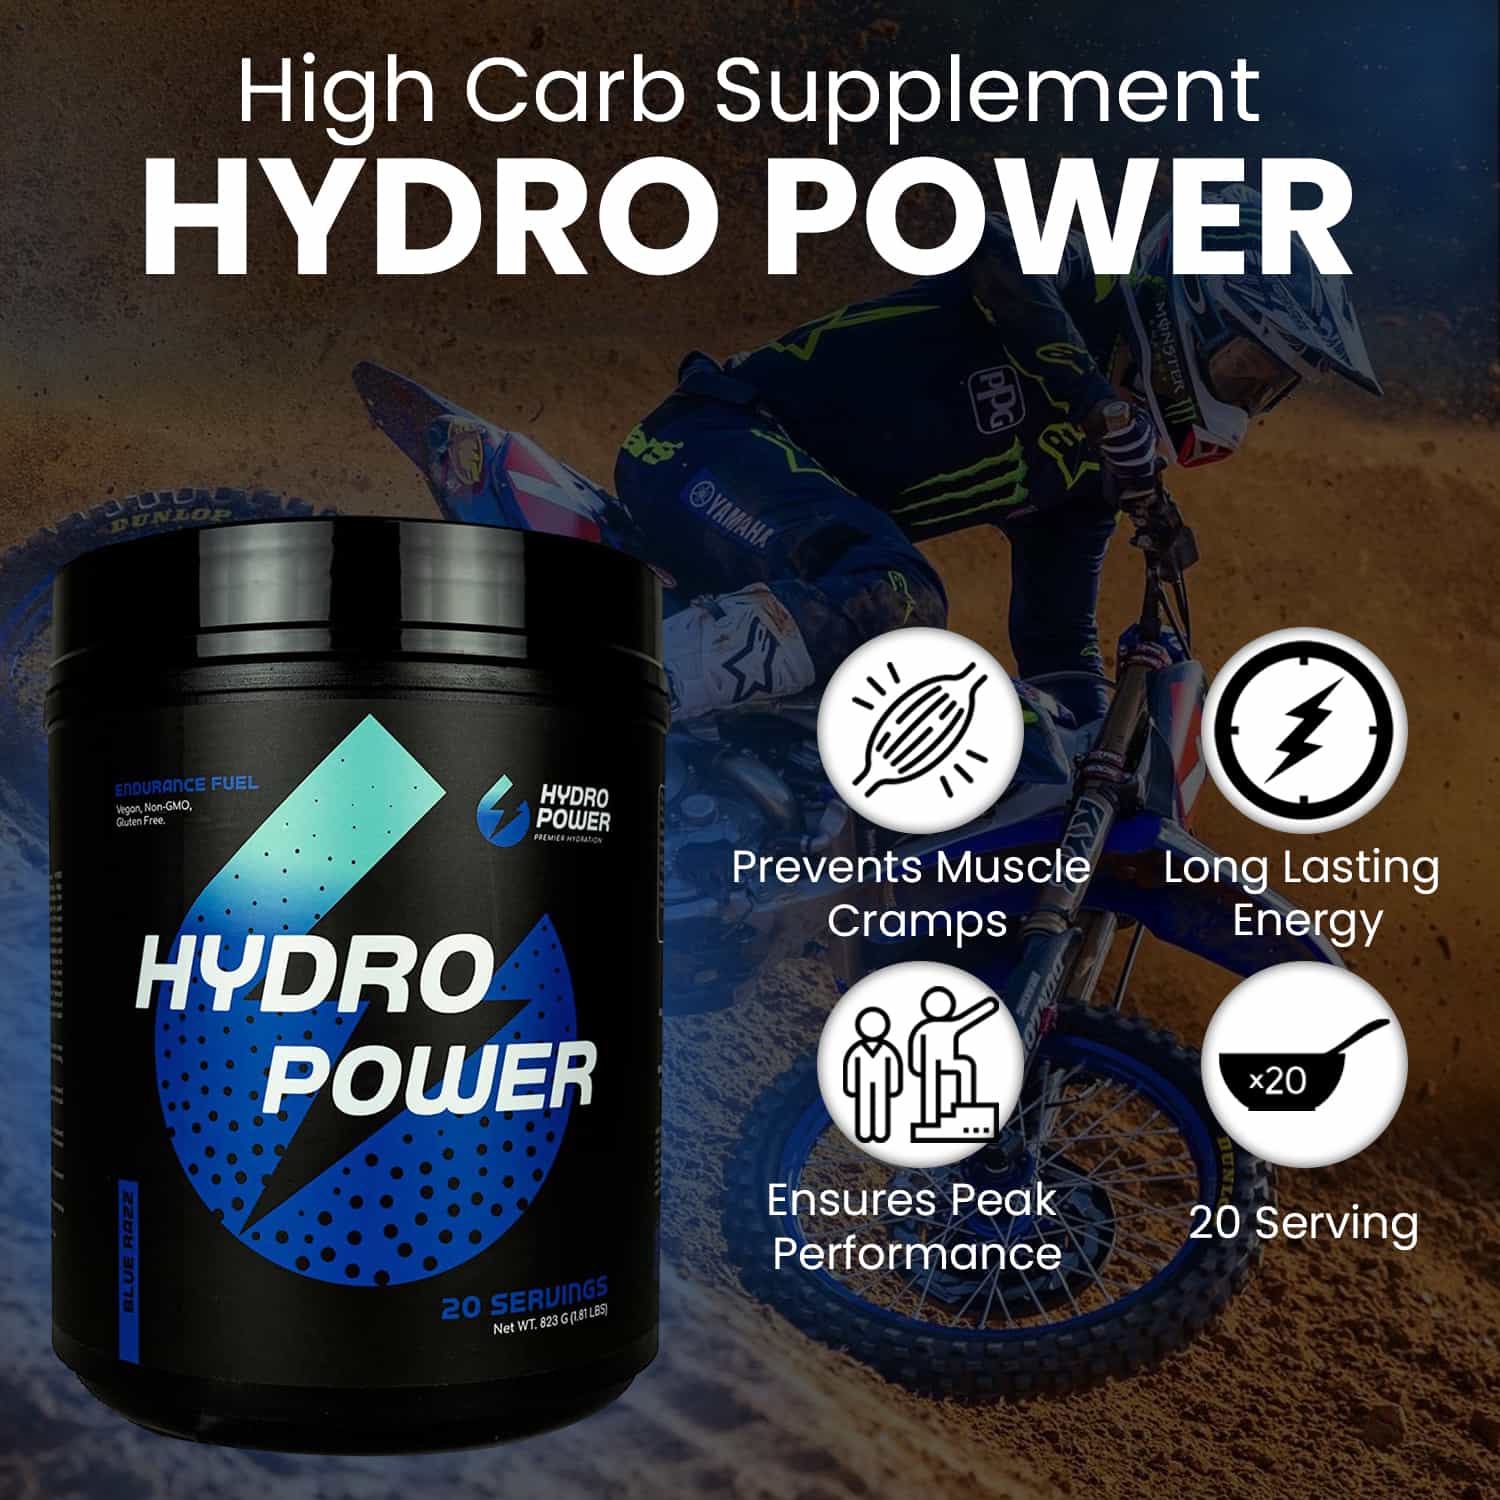 Pro Bundle: Pick 2 Jars of Hydro Power + 1 Bottle